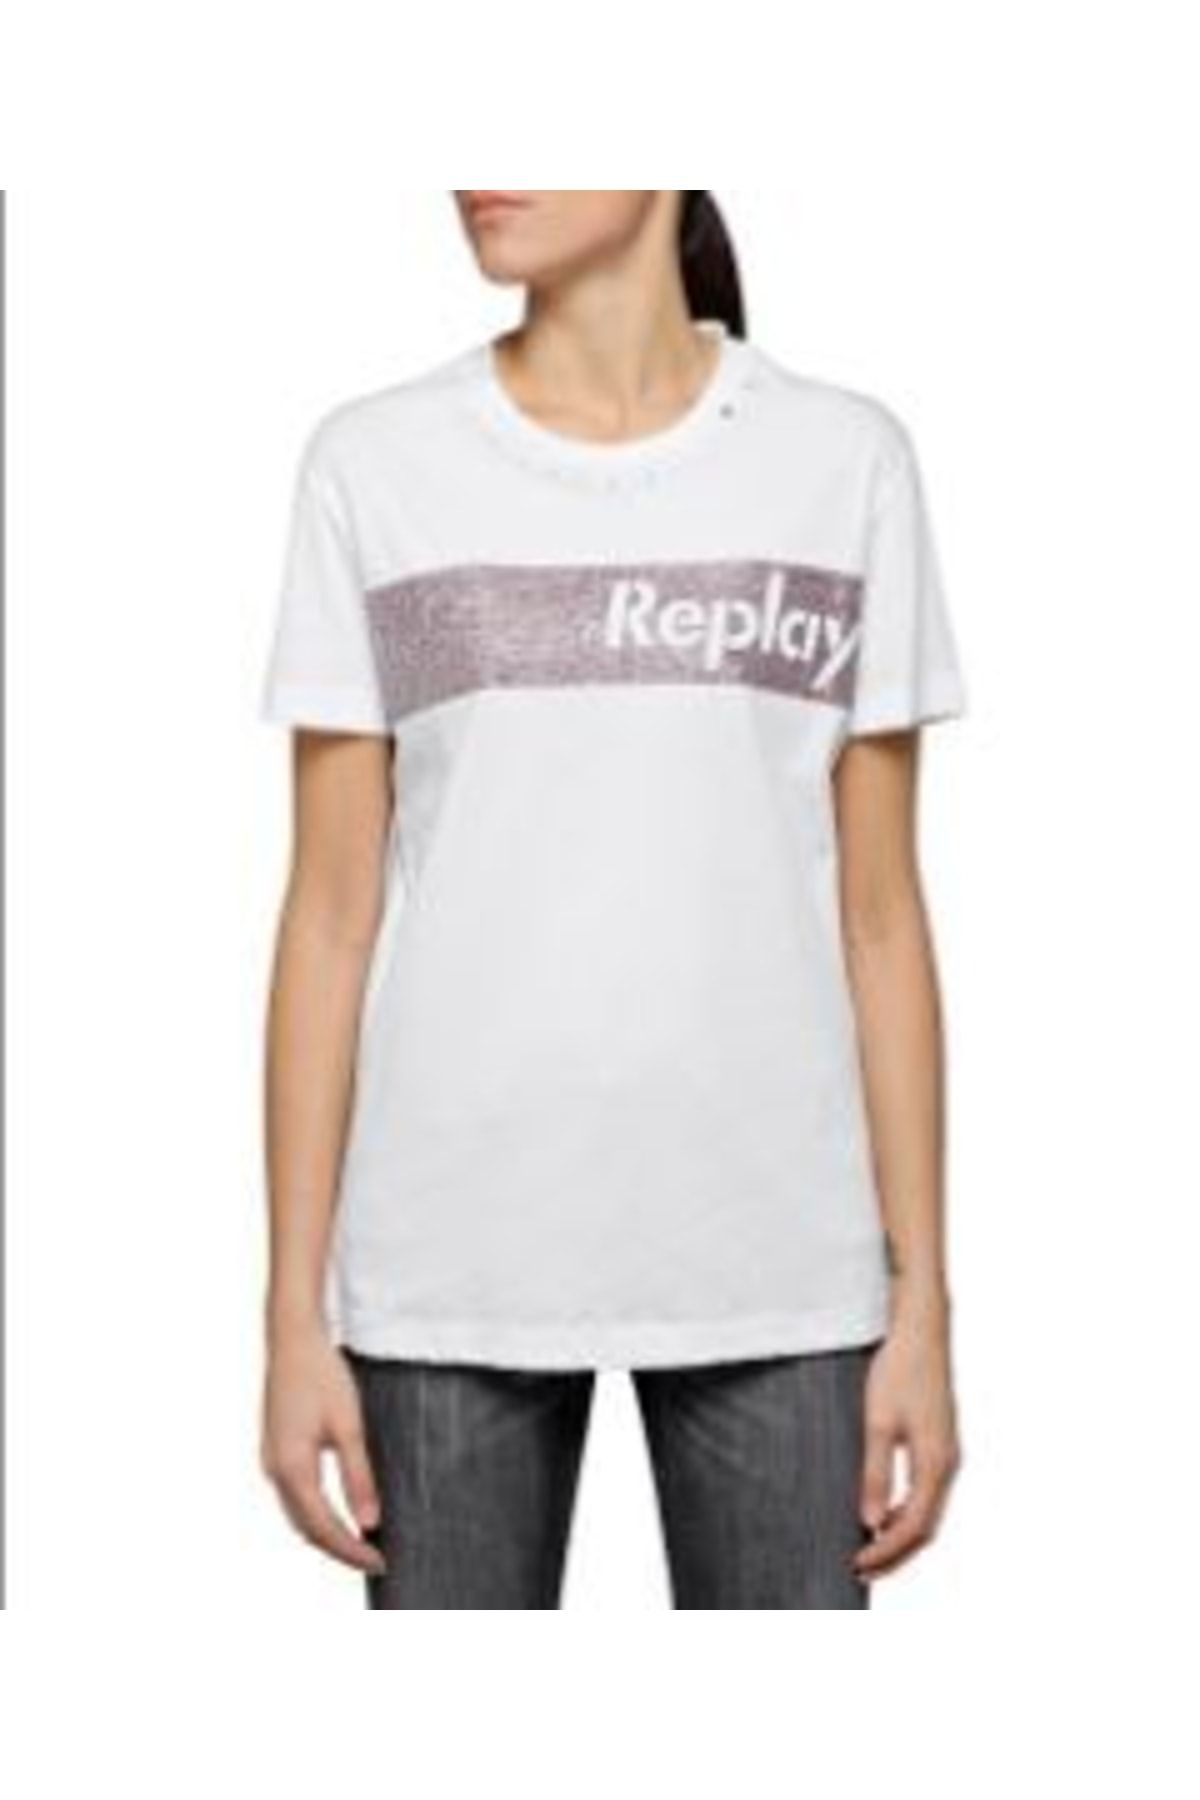 Replay Kadın Siyah Kısa Kollu Simli T-shirt